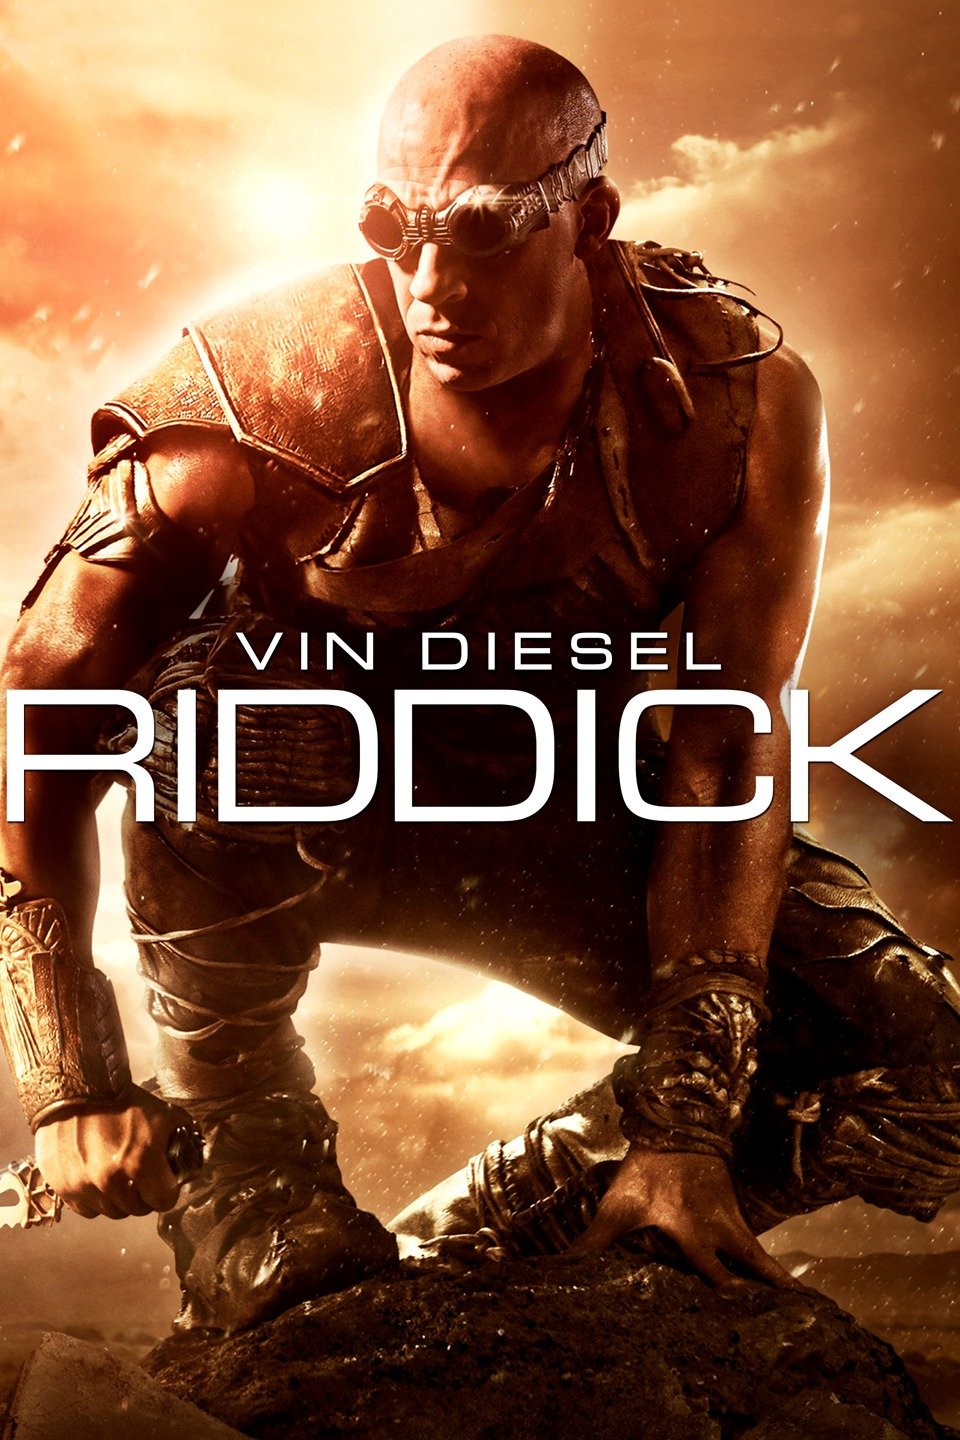 [MINI Super-HQ] Riddick (2013) ริดดิค ภาค 3 [1080p] [พากย์ไทย 5.1 + เสียงอังกฤษ DTS] [บรรยายไทย + อังกฤษ] [เสียงไทย + ซับไทย] [OPENLOAD]